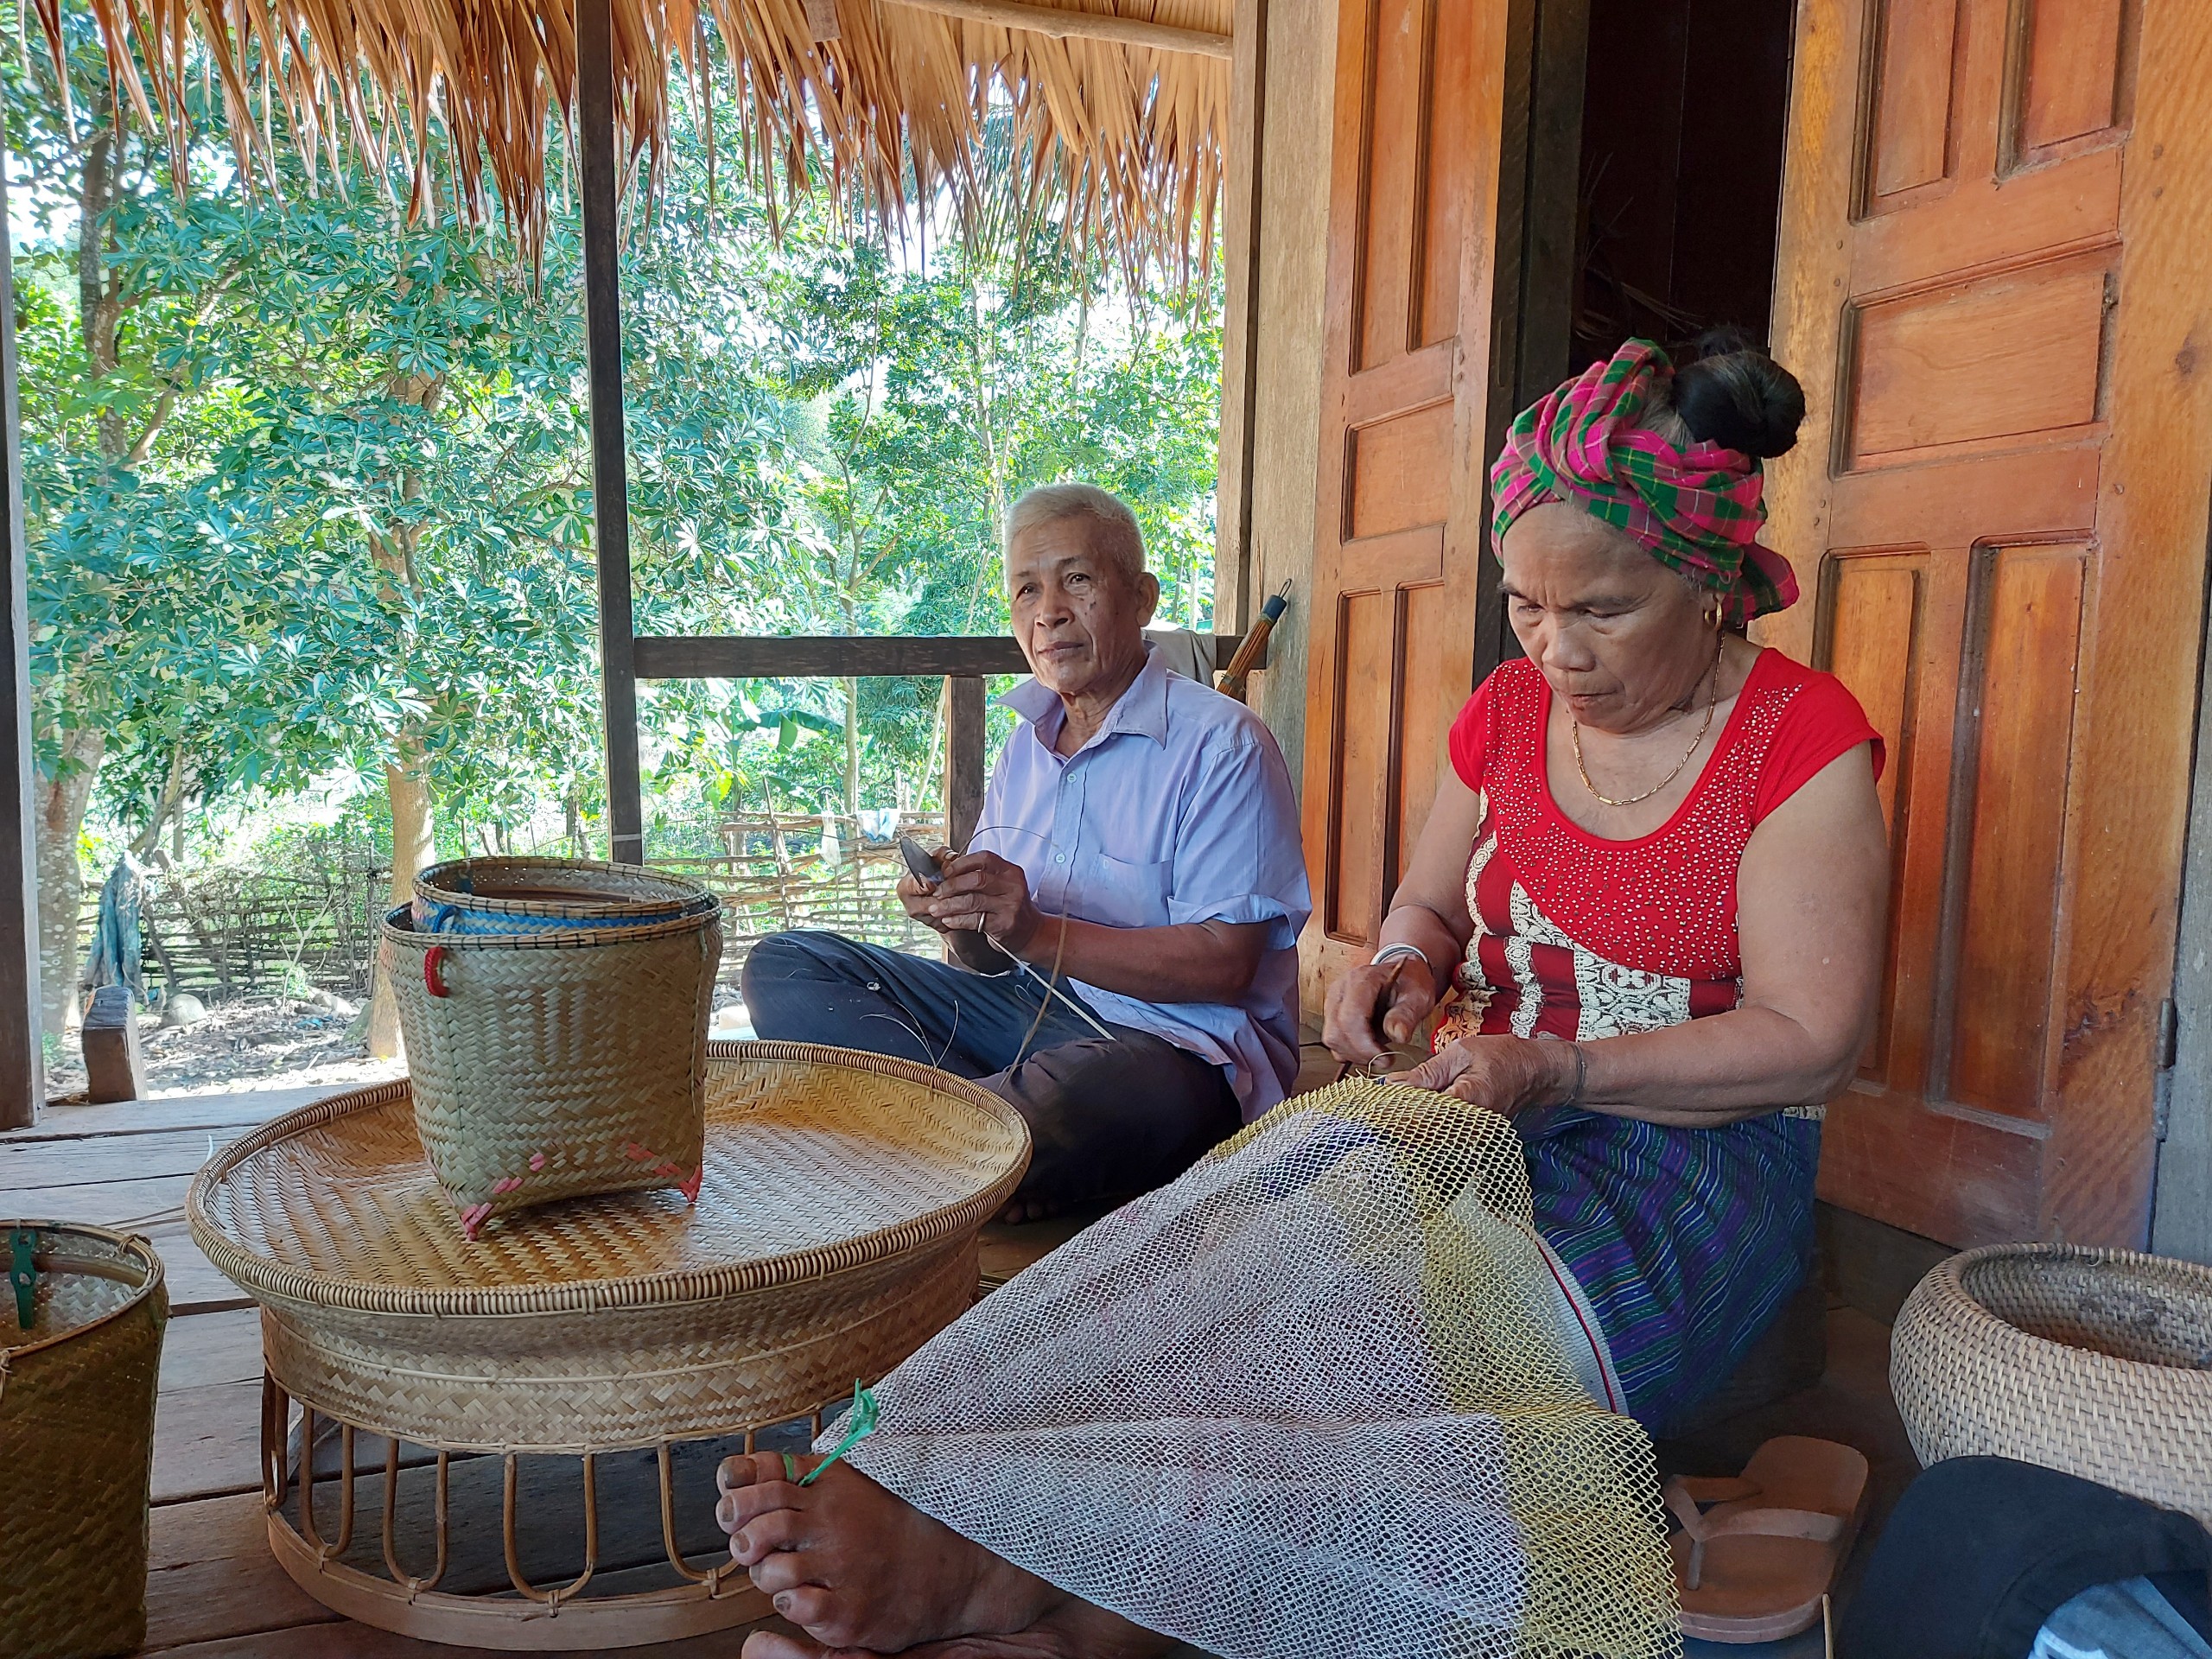 Hàng ngày, già làng Hồ Xây vẫn miệt mài đan lát để giữ nghề truyền thống của người Khùa.